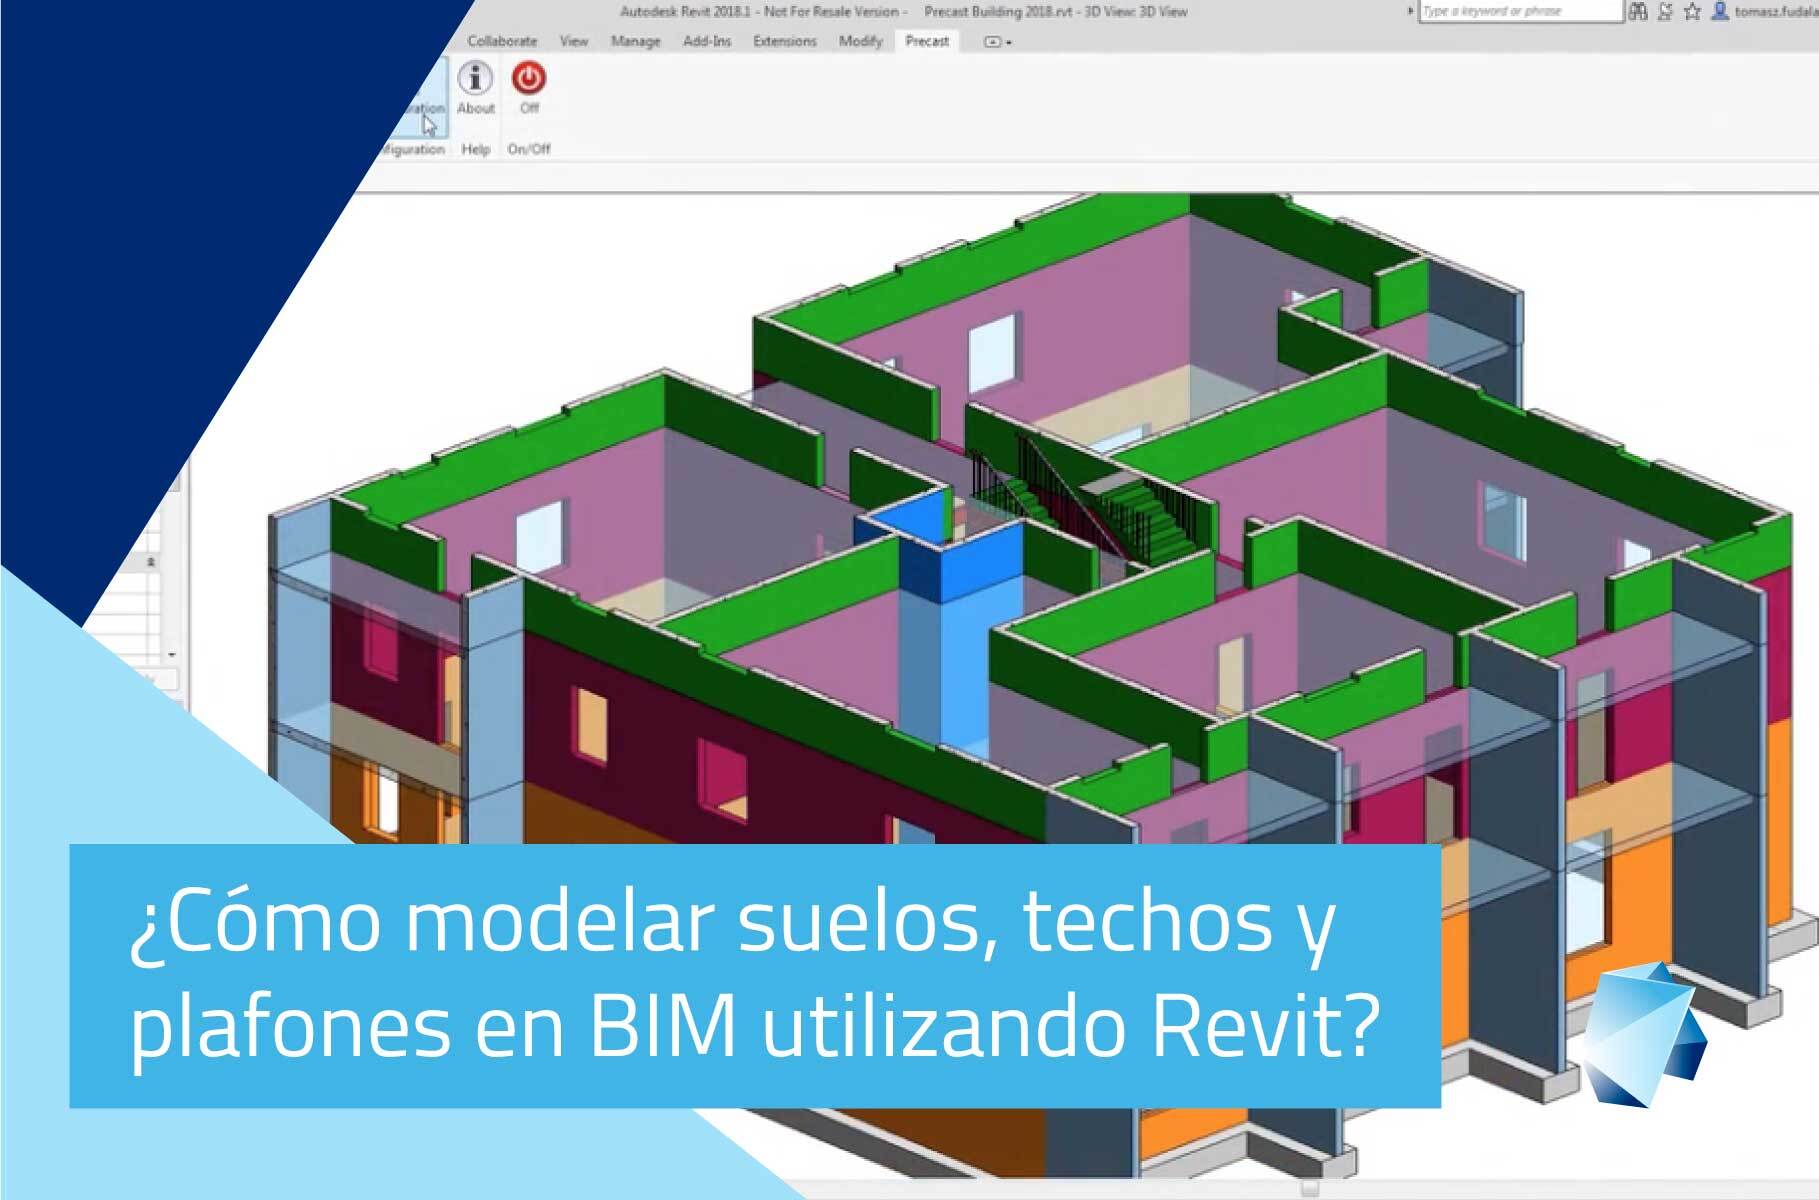 ¿Cómo modelar en BIM suelos, techos y plafones utilizando Revit?